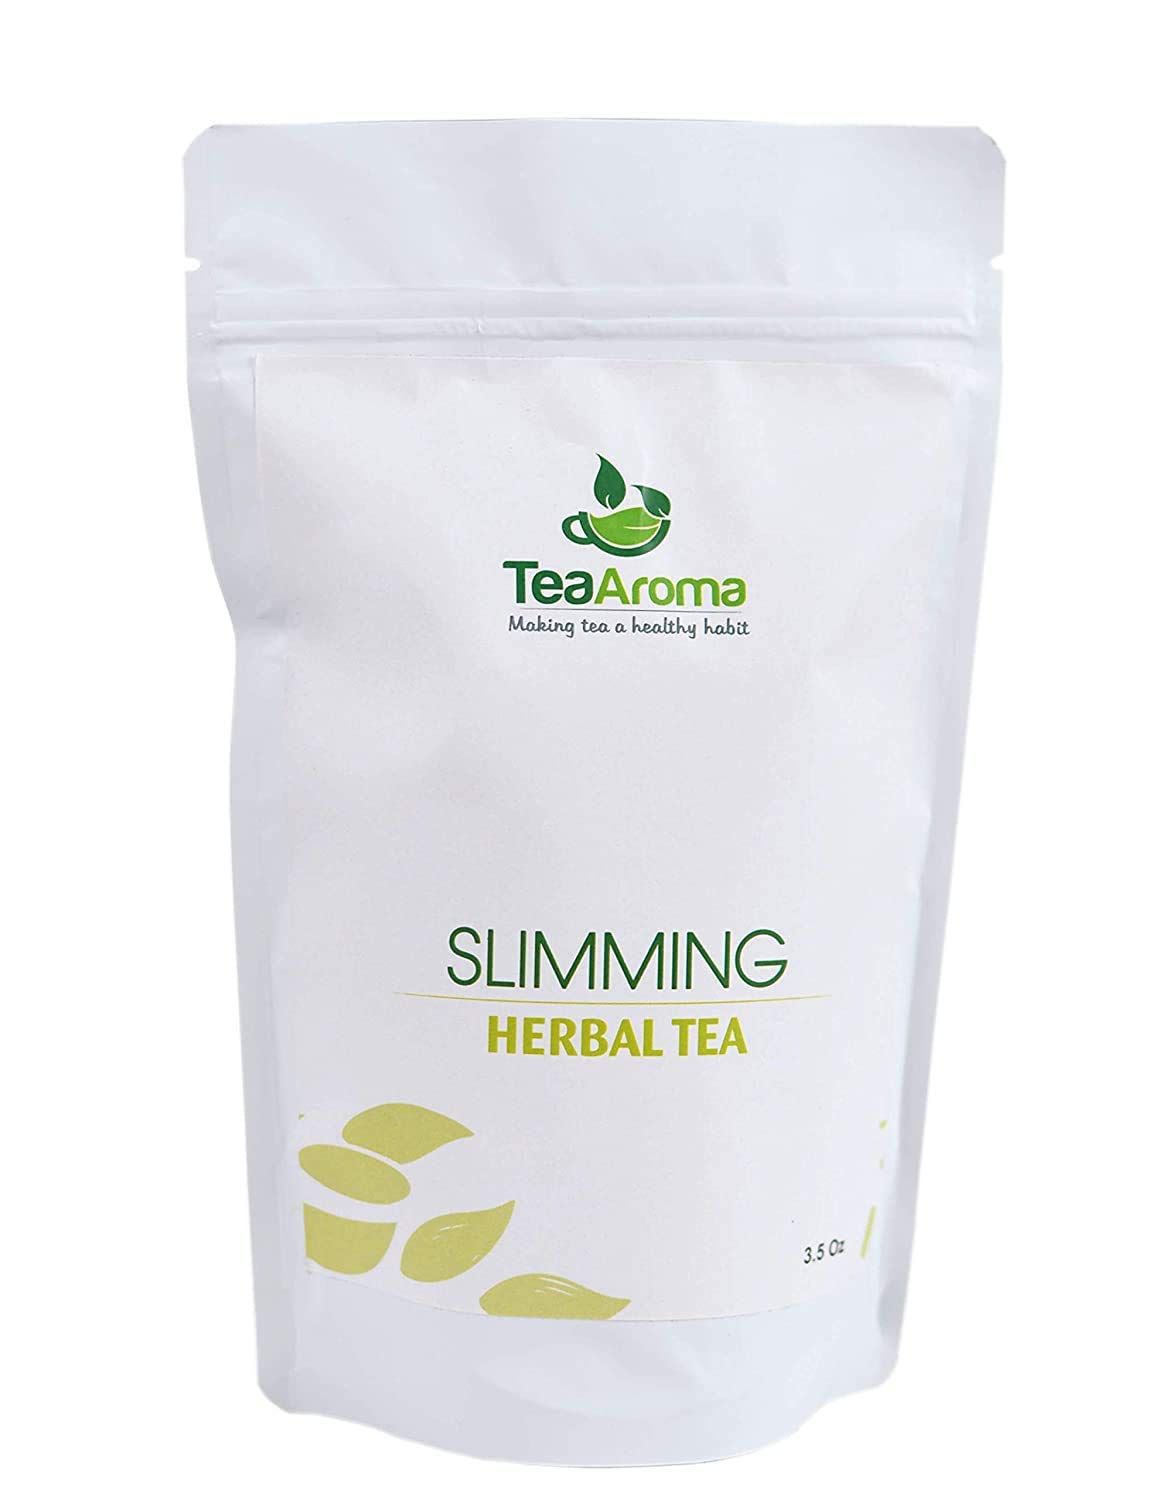 Tea Aroma Slimming Herbal Tea Image